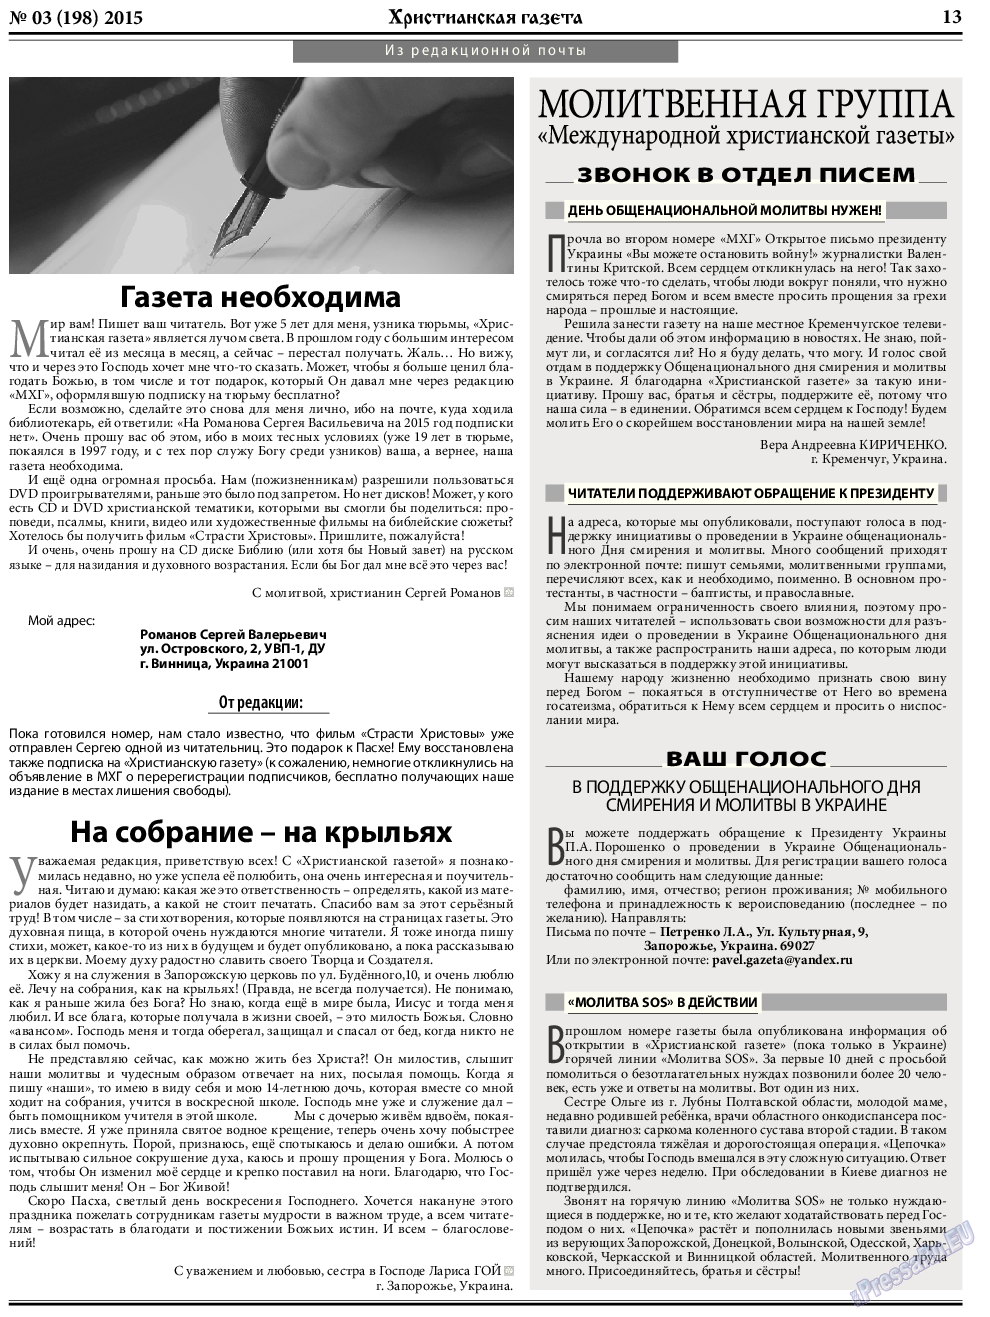 Христианская газета, газета. 2015 №3 стр.21